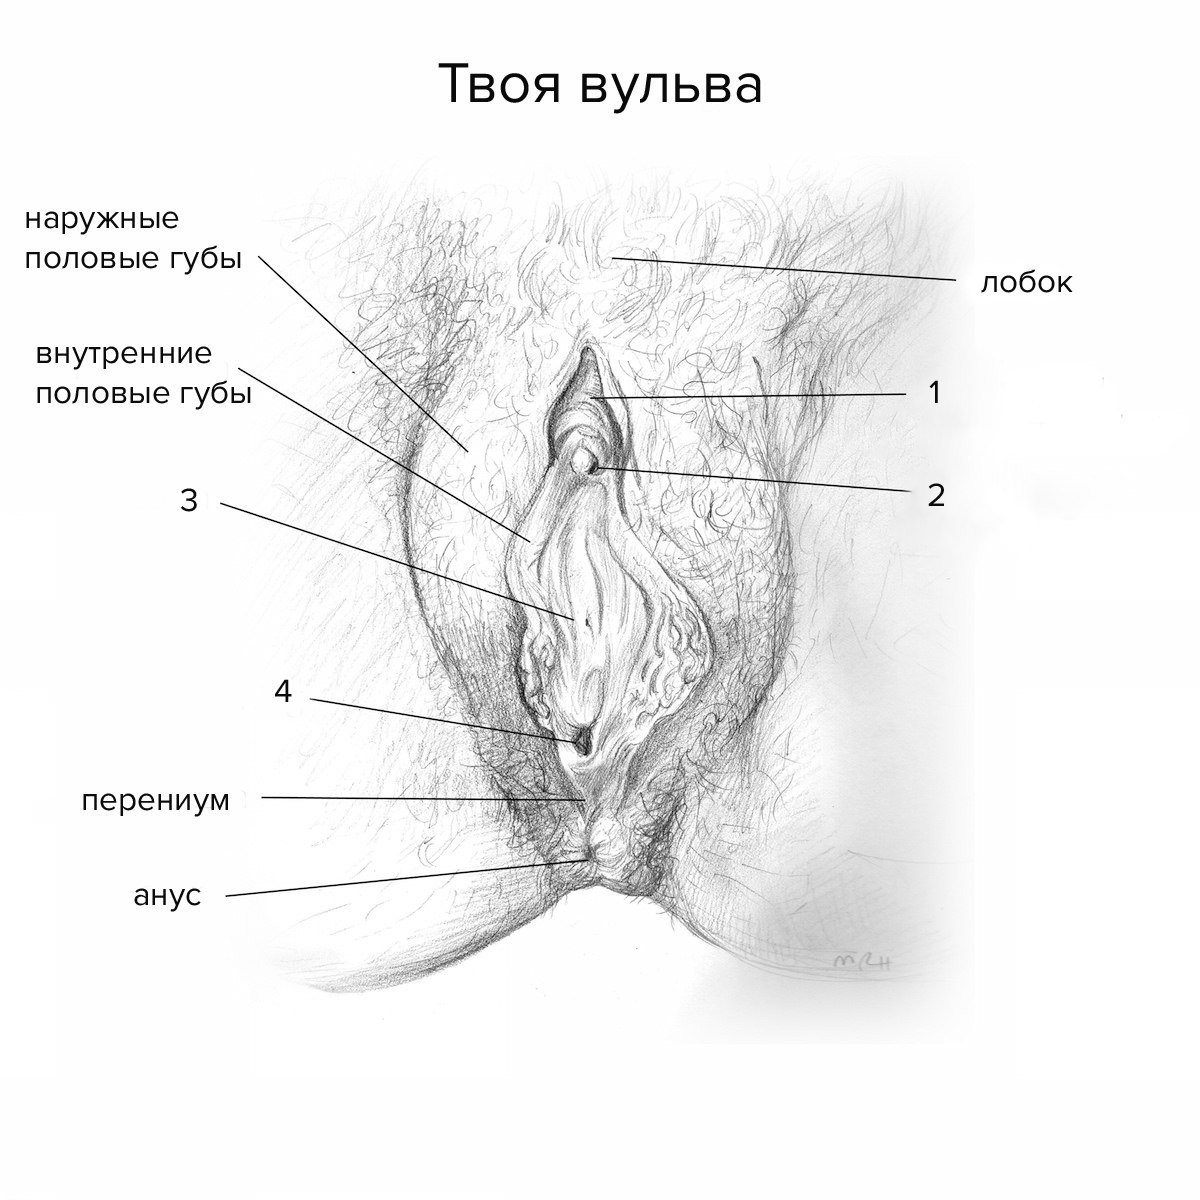 женские органы голая (120) фото